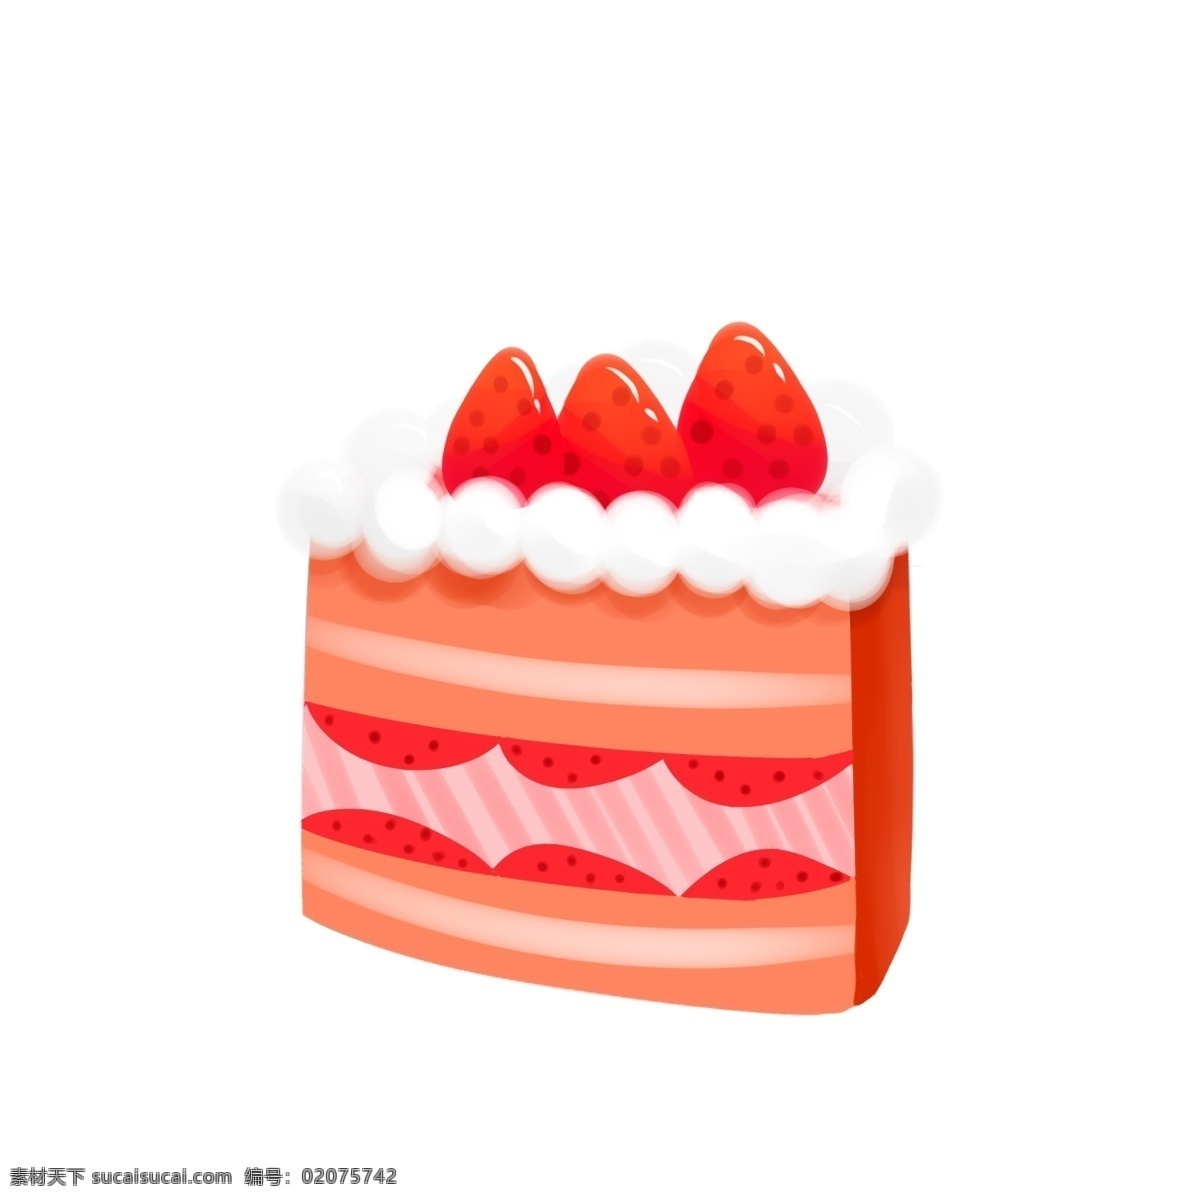 美食 草莓 夹心 奶油 蛋糕 甜品 卡通 手绘 草莓蛋糕 草莓夹心 奶油蛋糕